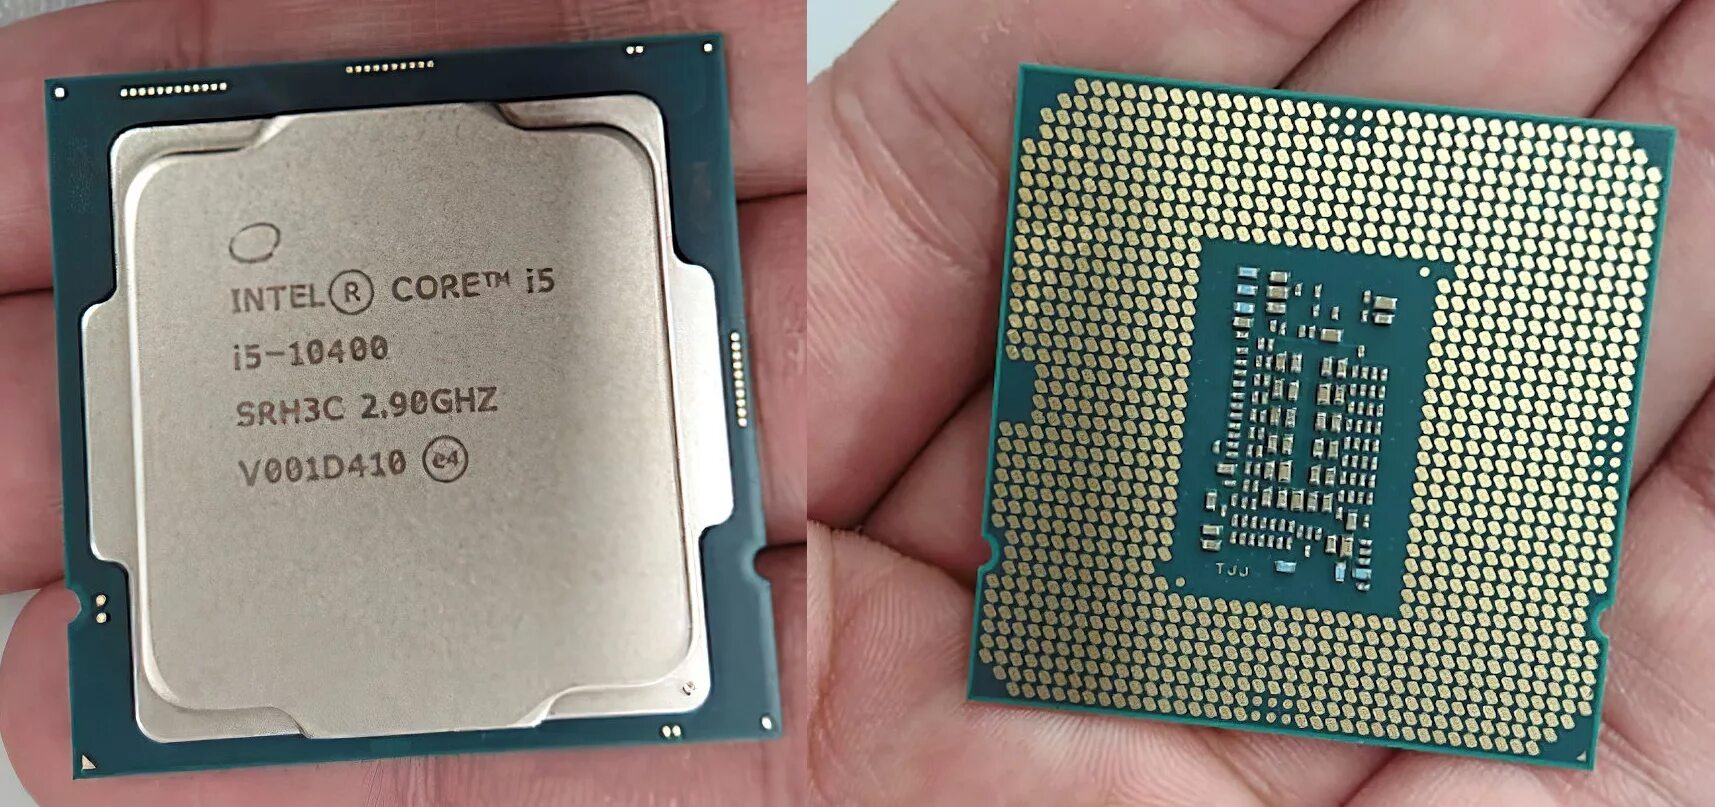 4 3.3 ггц. Процессор Intel Core i5-10400. Процессор Intel Core i5 12400f. Процессор Intel Core i5-10400f OEM. Процессор Intel Core i5 Comet Lake i5-10400f OEM.